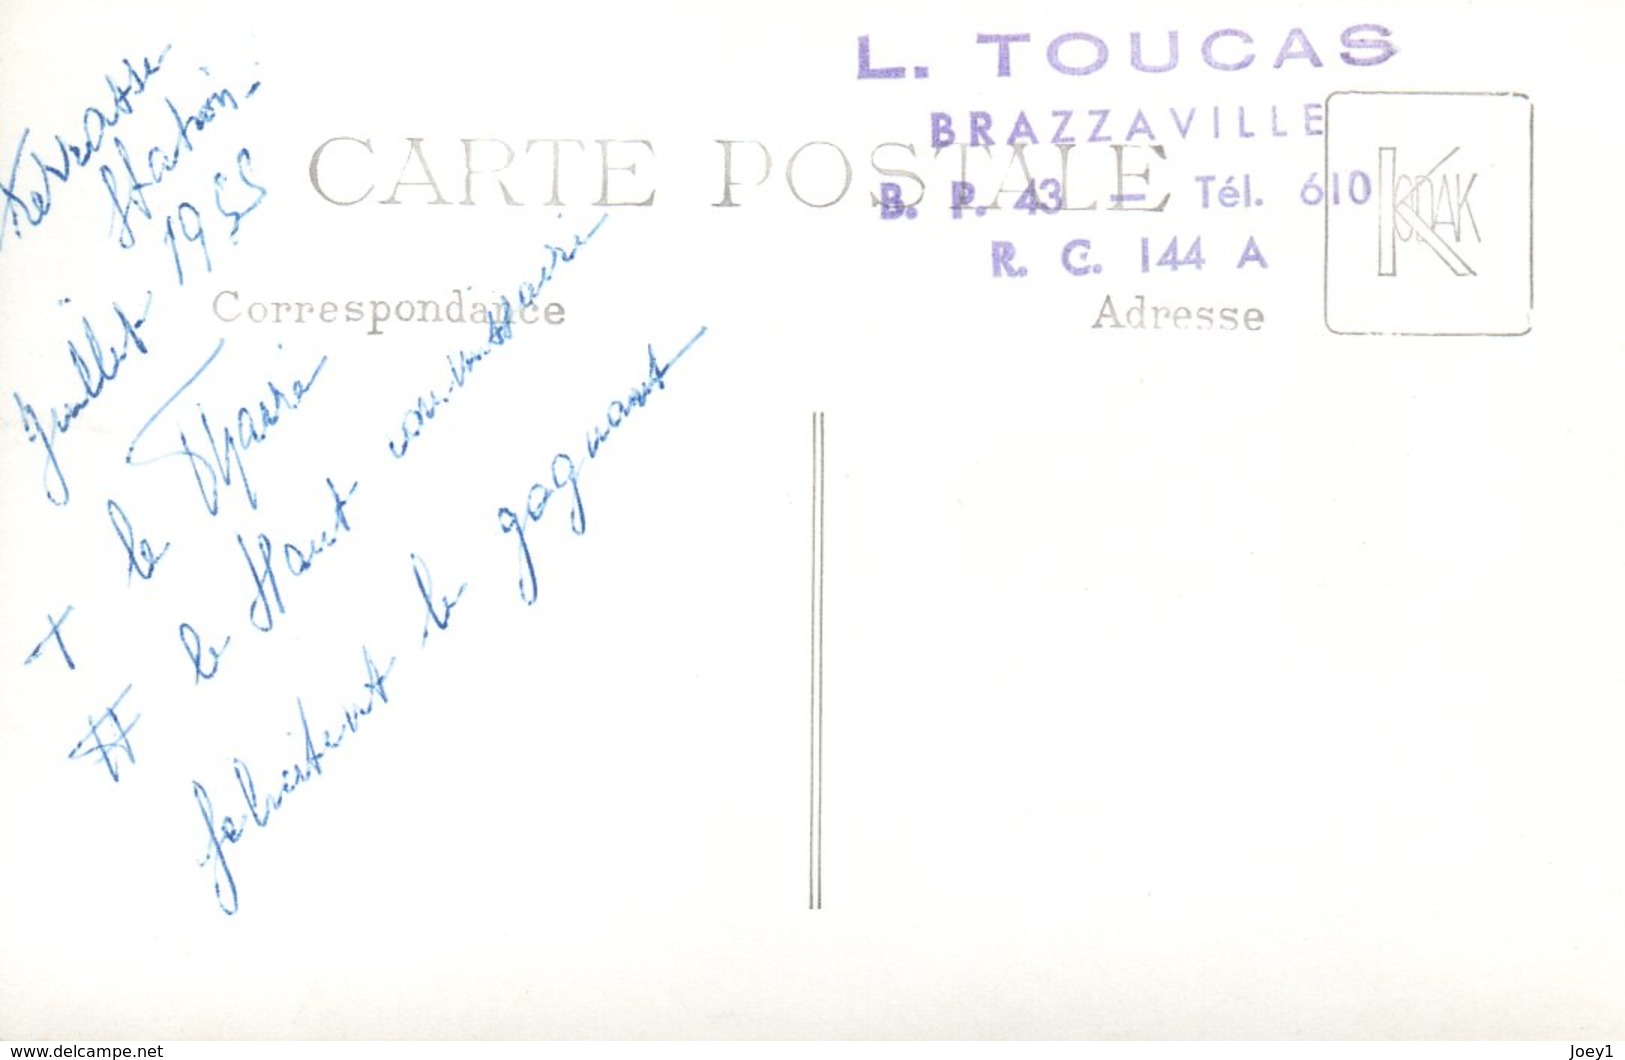 Carte Photo 1955 Le Haut Commissaire Et Le Maire De Brazaville Félicite Un Champion Cycliste - Afrika